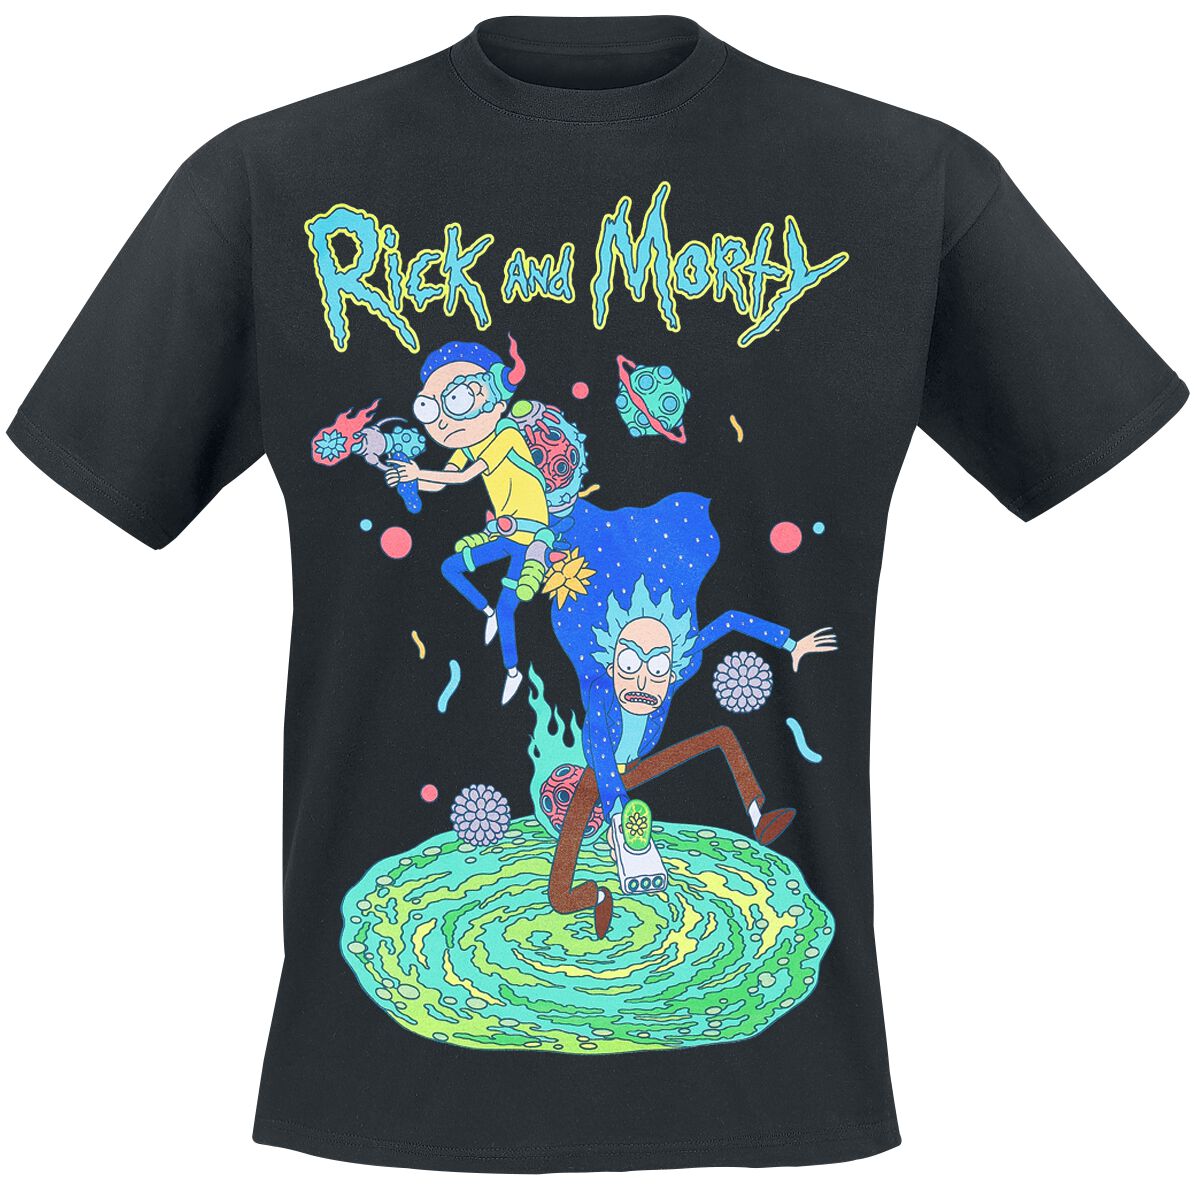 Rick And Morty T-Shirt - Space Rangers - S bis 4XL - für Männer - Größe M - schwarz  - EMP exklusives Merchandise!